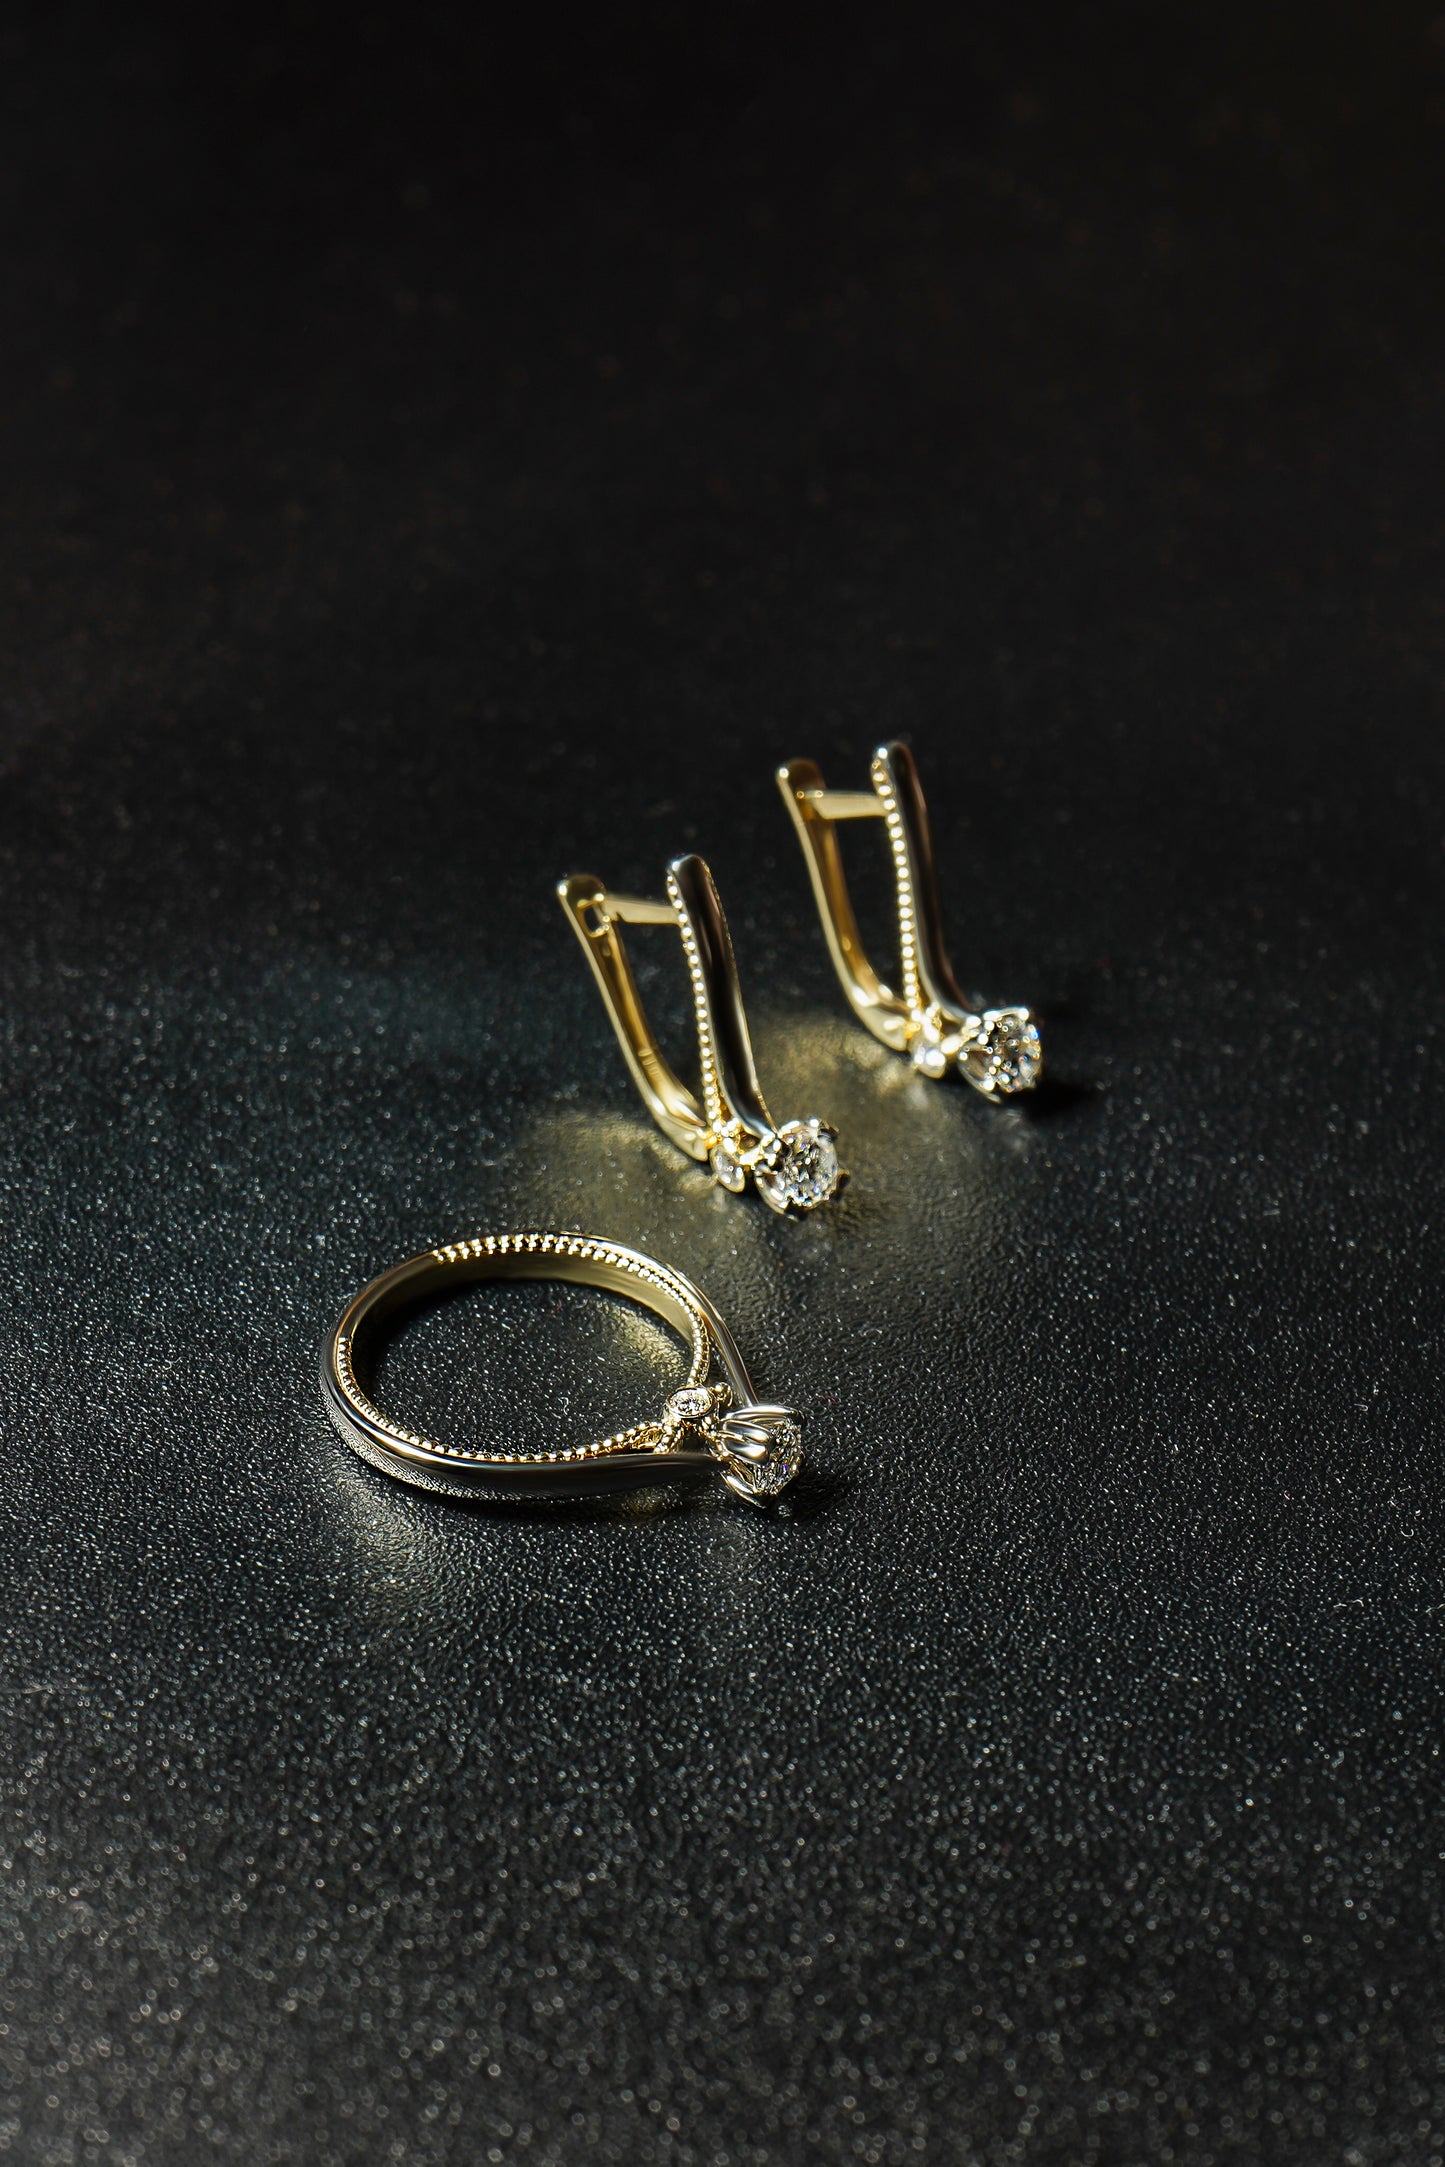 Набір каблучка та сережки з комбінованого золота з діамантом середнього розміру по центру. Зображений на чорному фоні